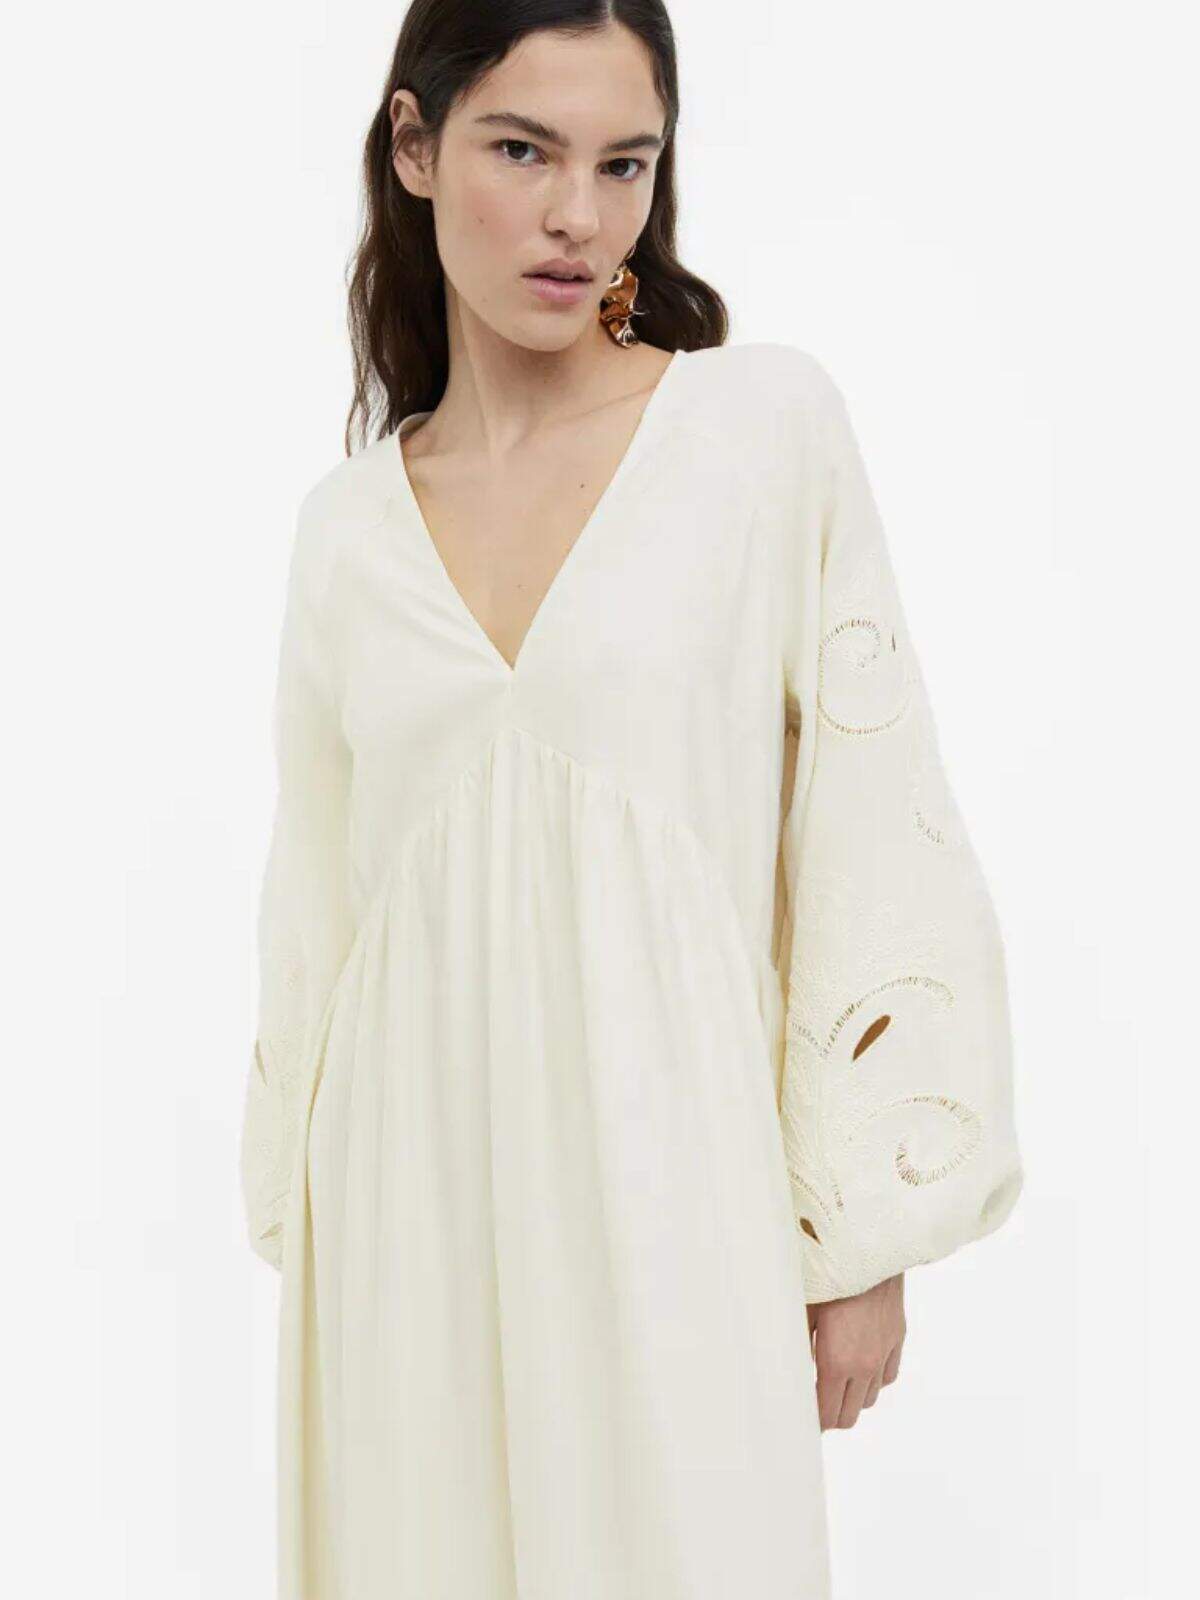 H&M tiene el vestido blanco y querrás esta temporada de primavera-verano